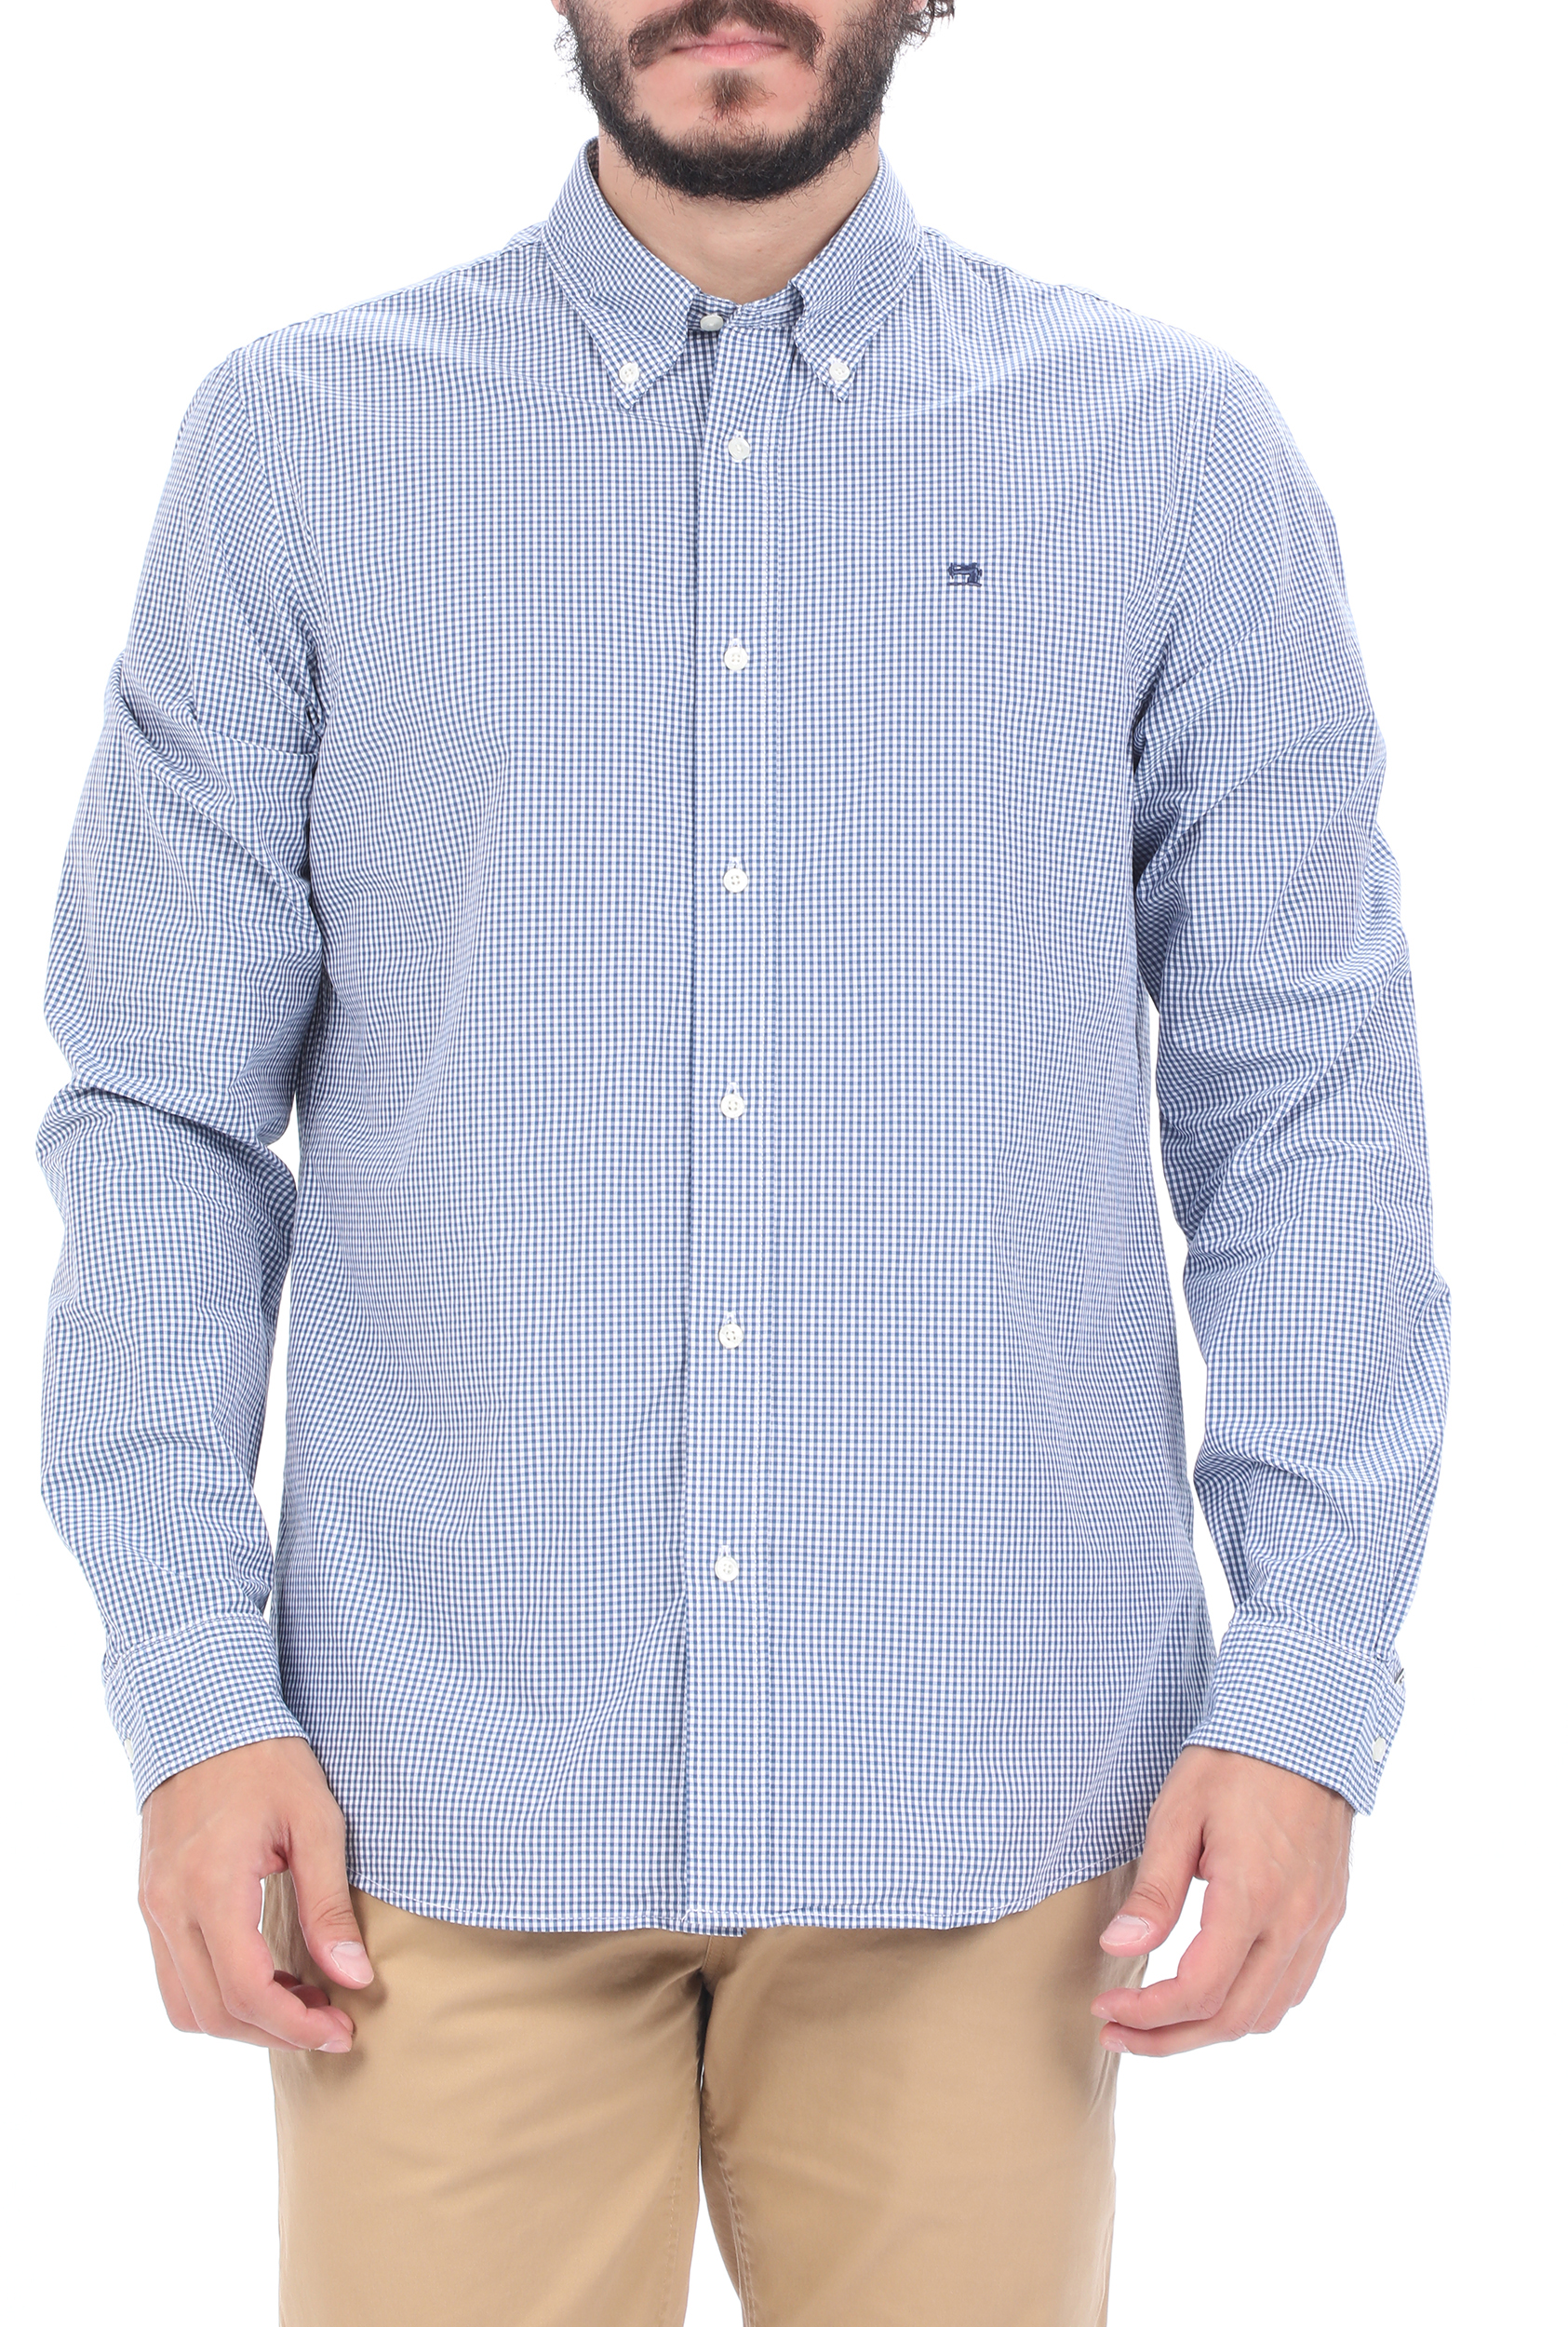 Ανδρικά/Ρούχα/Πουκάμισα/Μακρυμάνικα SCOTCH & SODA - Ανδρικό πουκάμισο SCOTCH & SODA μπλε λευκό